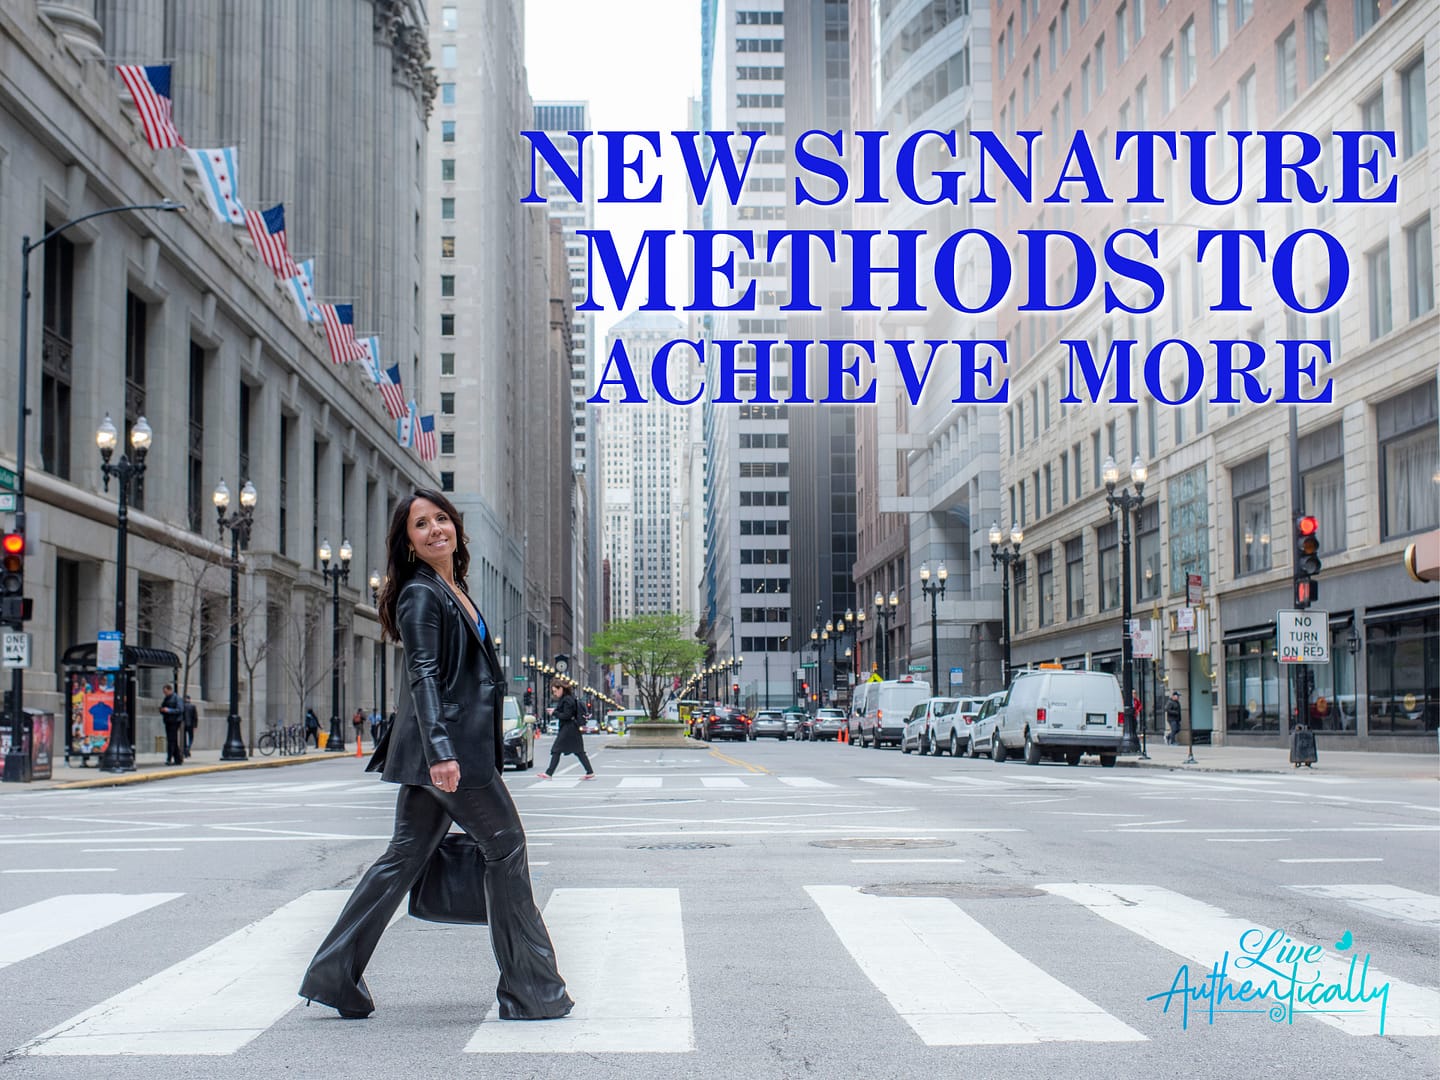 NEW Signature Methods To Achieve More